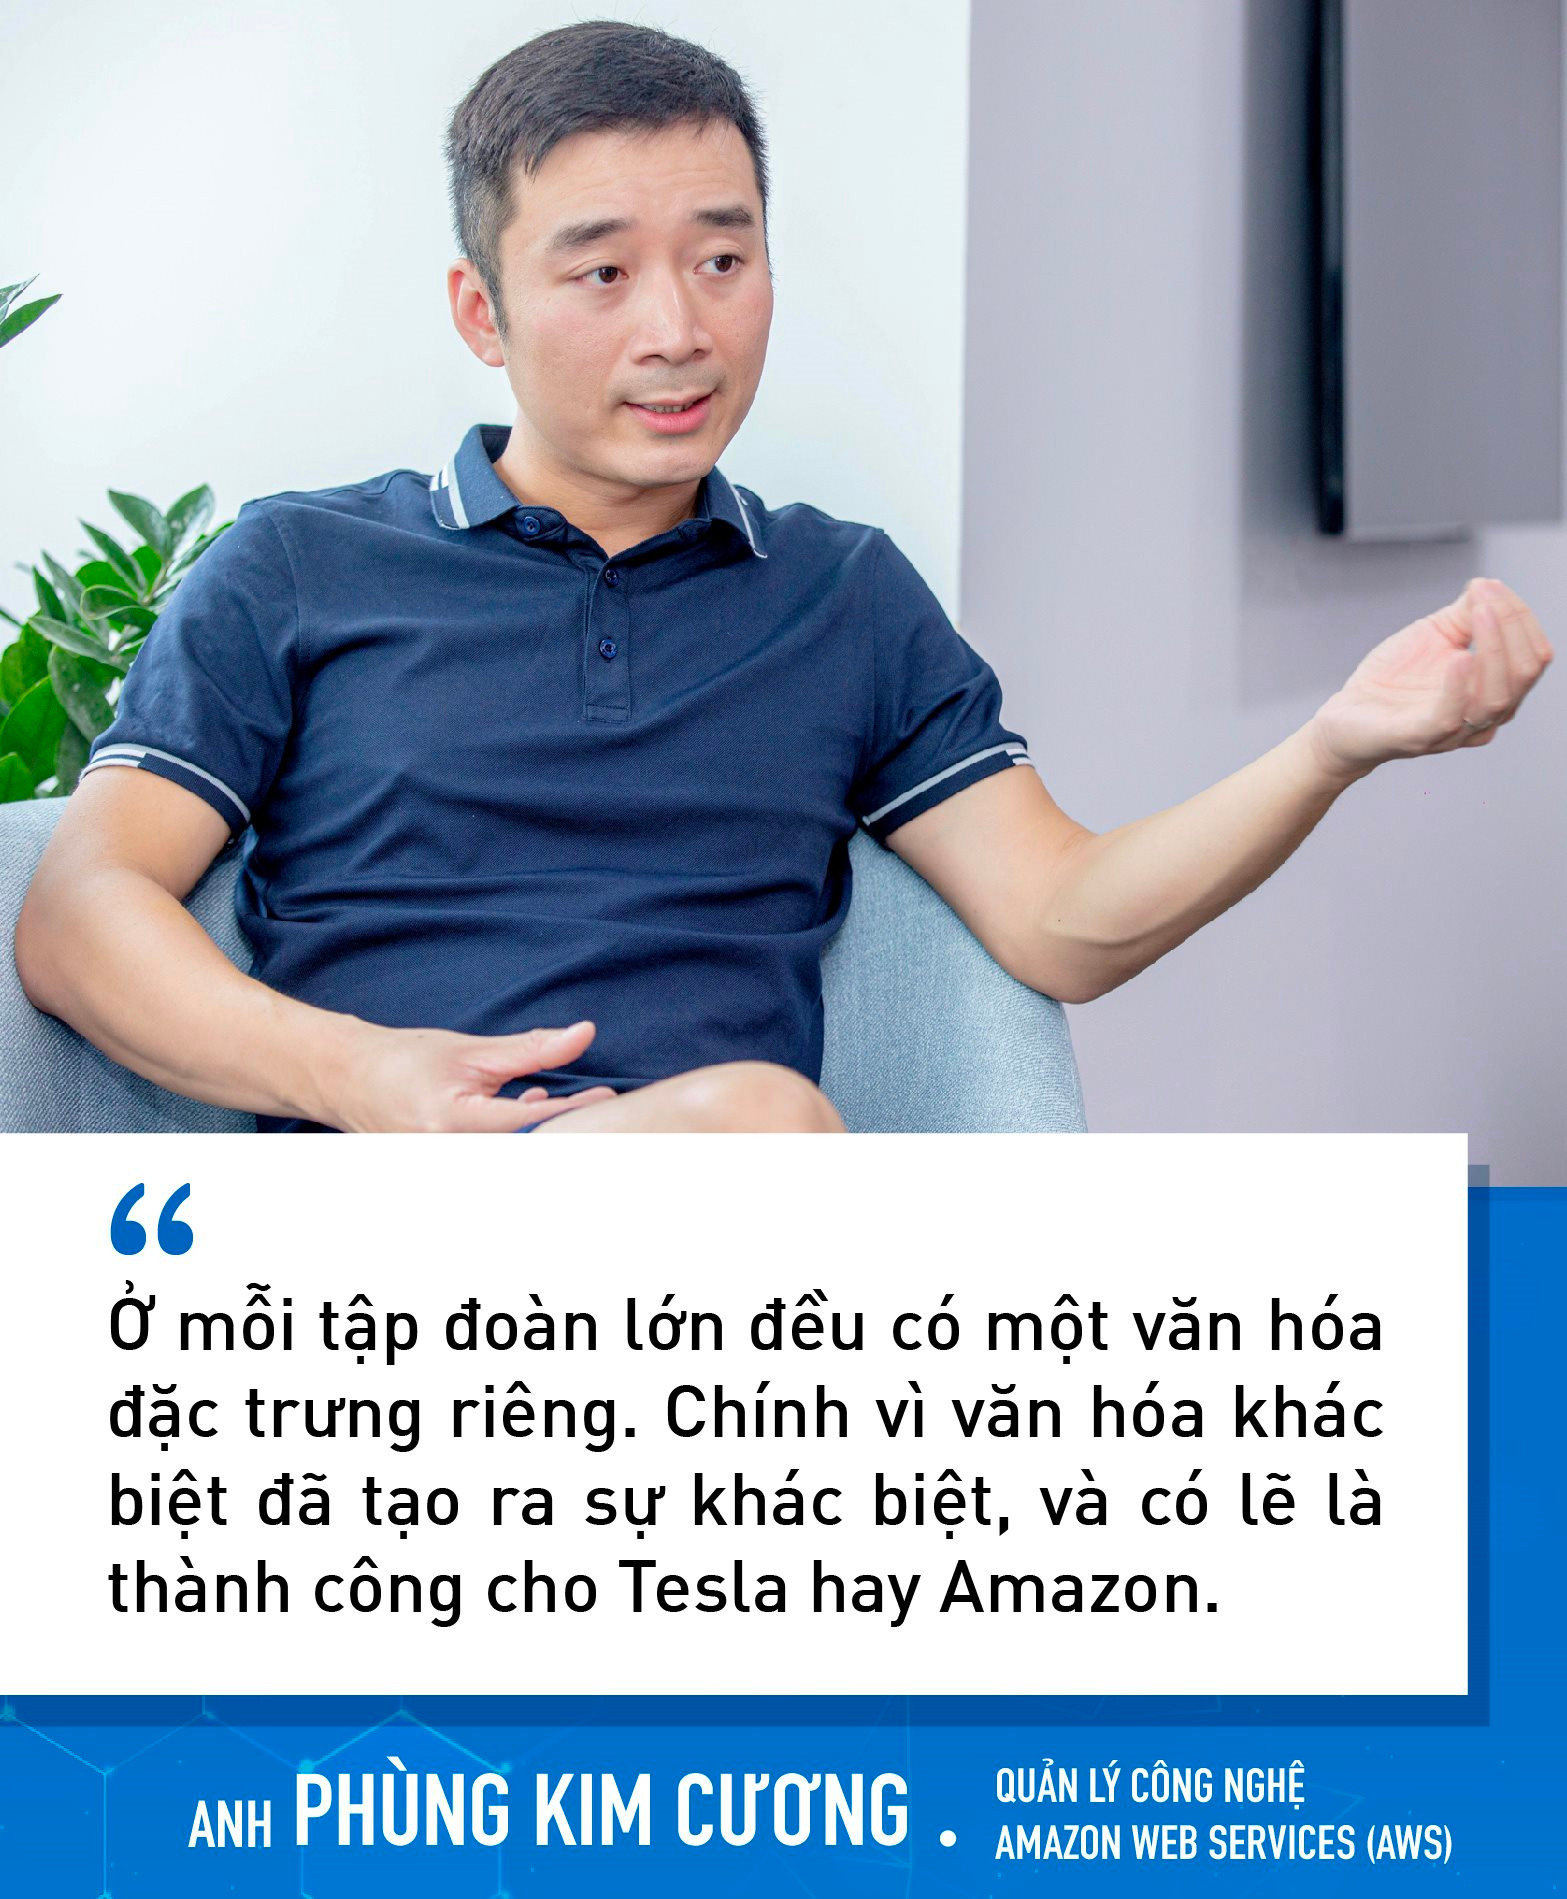 Chuyên gia công nghệ Việt làm cho Tesla, Amazon chỉ ra những yếu tố sẽ giúp NIC trở thành Silicon Valley của Việt Nam trong tương lai - Ảnh 3.